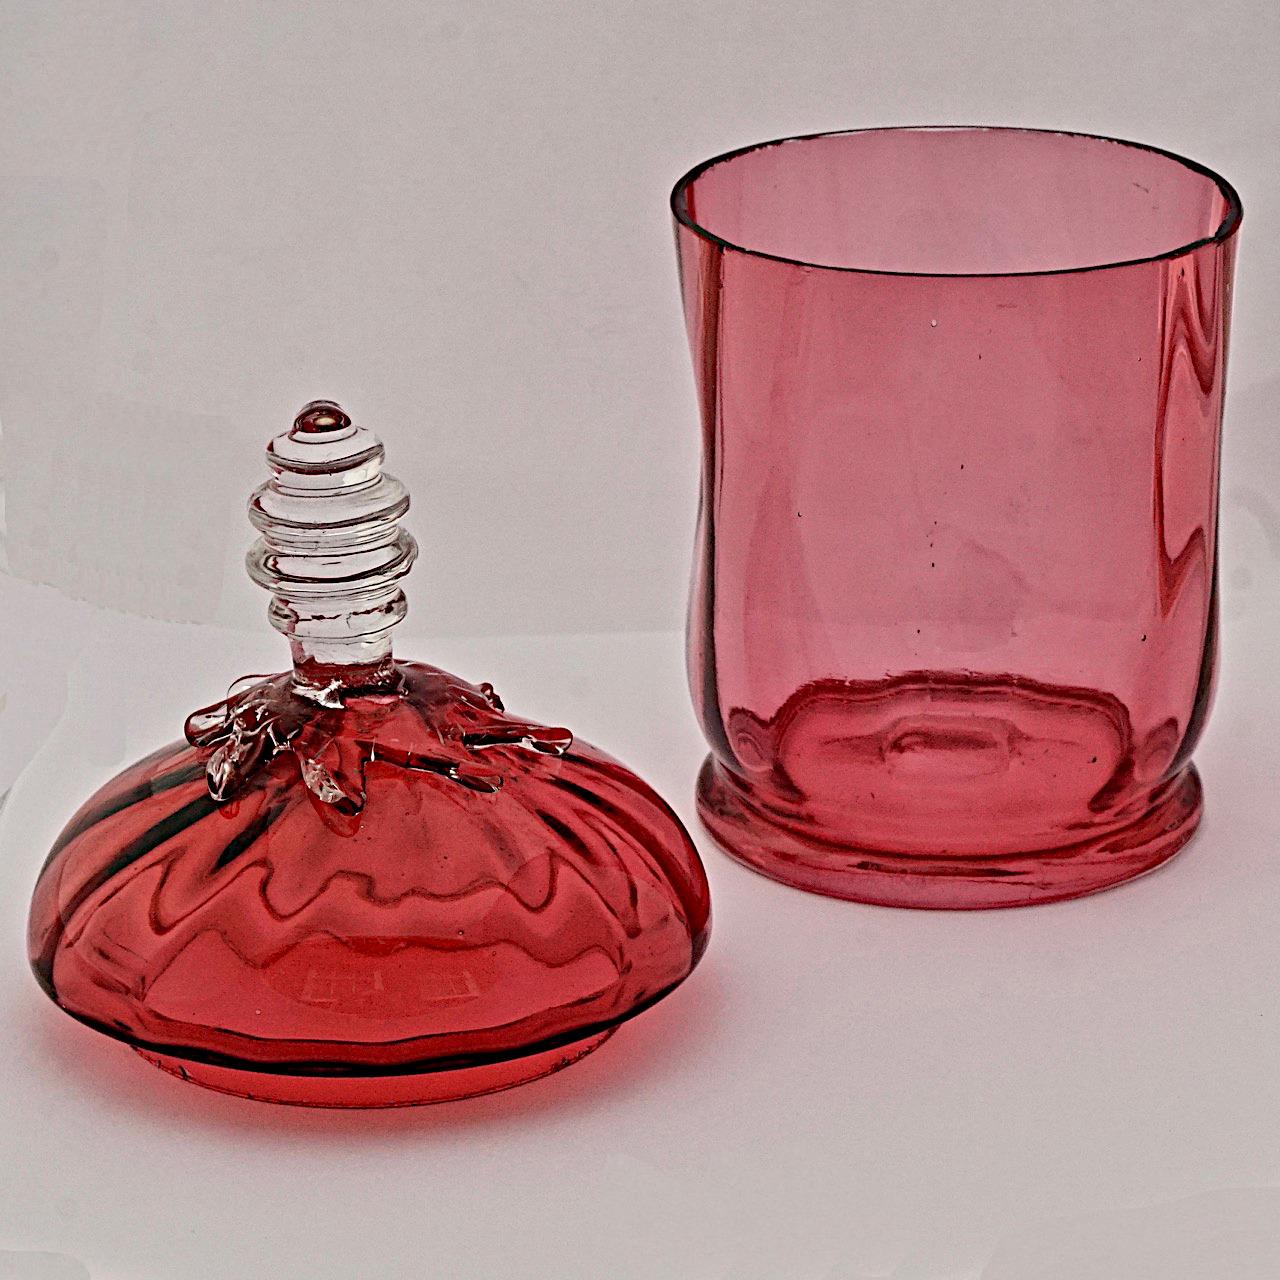 Merveilleuse jarre victorienne ancienne en verre canneberge faite à la main, avec un couvercle en verre transparent appliqué. La hauteur est d'environ 17 cm / 6,7 pouces, et le diamètre de la base est de 7,8 cm / 3 pouces. Il y a une marque de